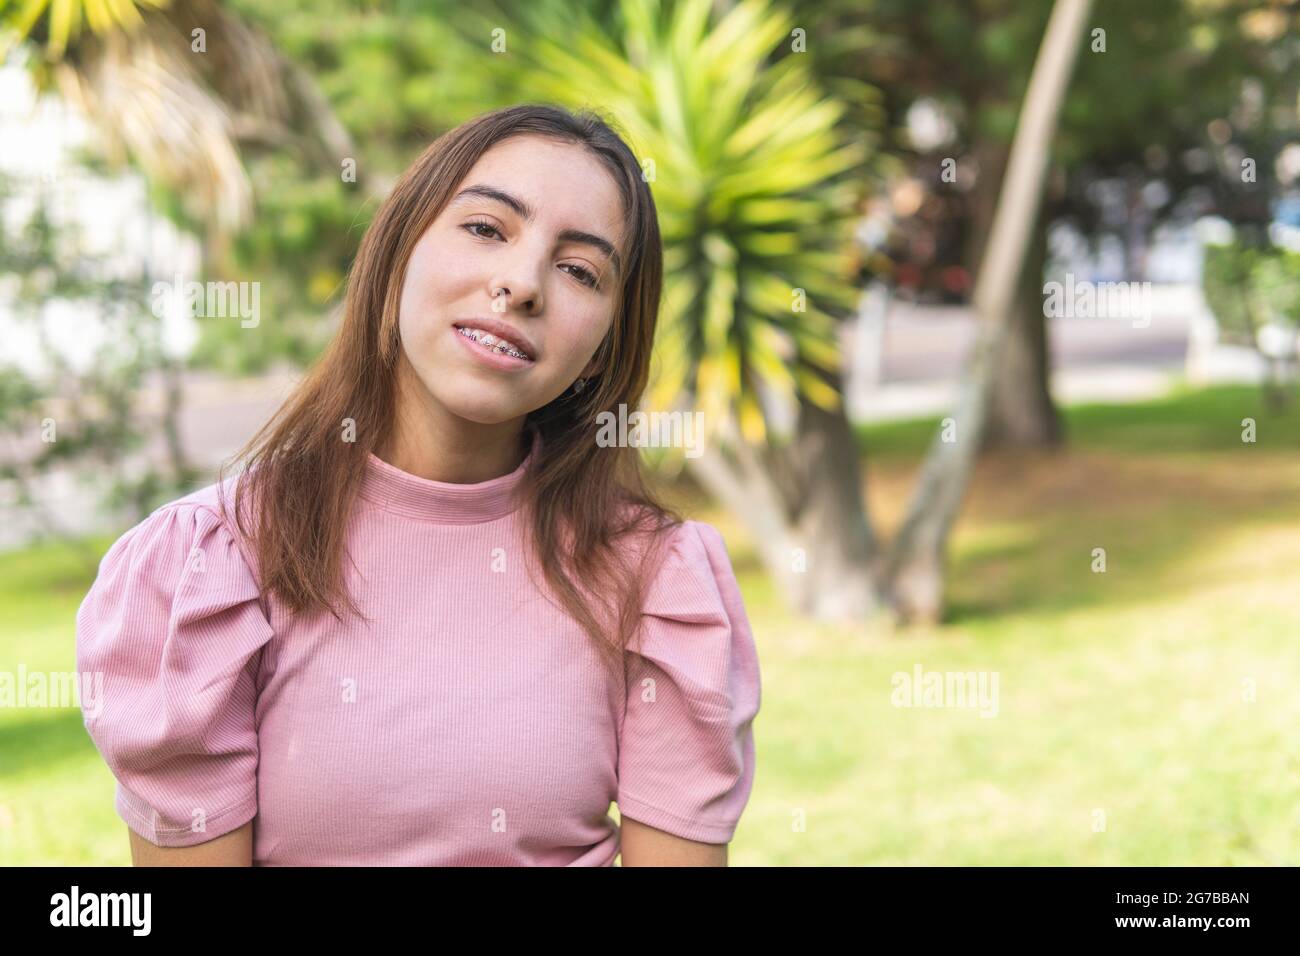 Ritratto di una ragazza teenage latina con bretelle guardando la macchina fotografica all'aperto vestita in una blusa rosa in un parco Foto Stock